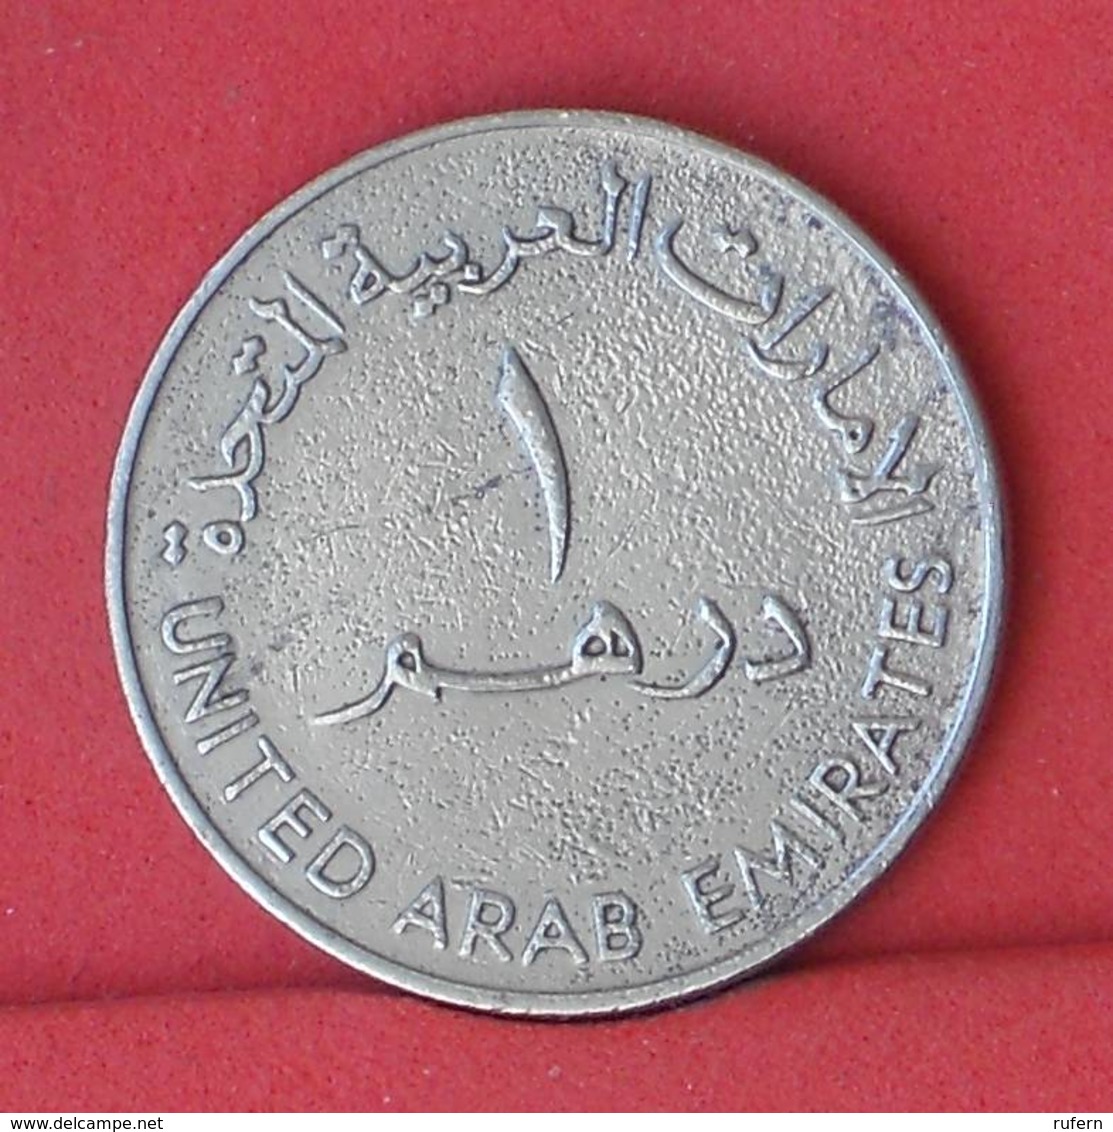 UNITED ARAB EMIRATES 1 DIRHAM 1973 -    KM# 6,1 - (Nº33693) - Ver. Arab. Emirate